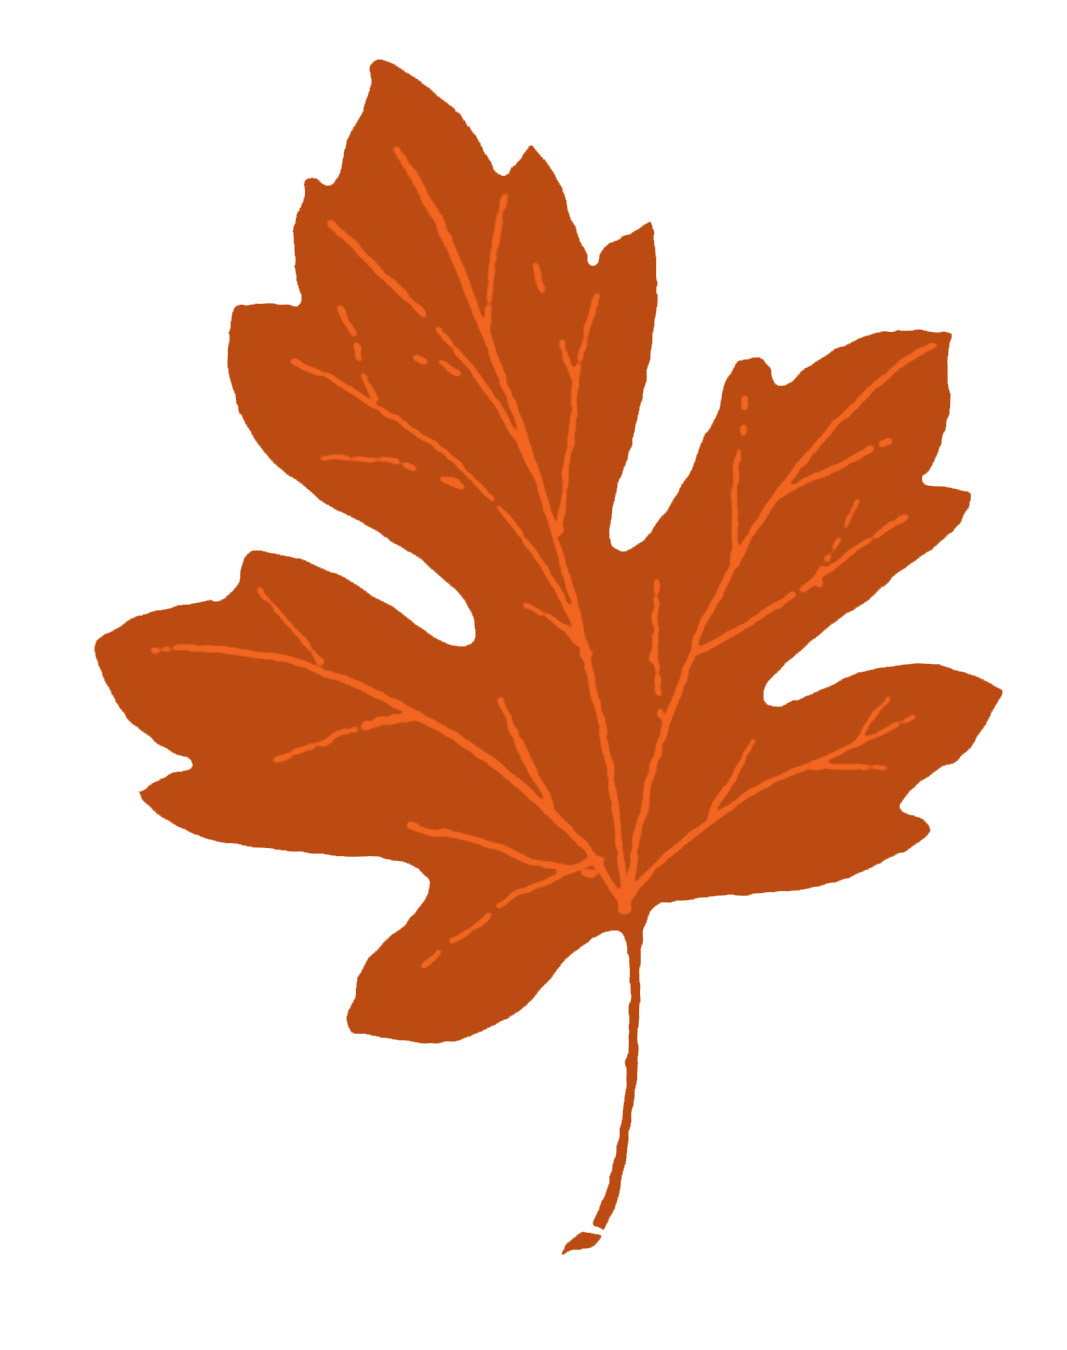 Simple autumn leaf.